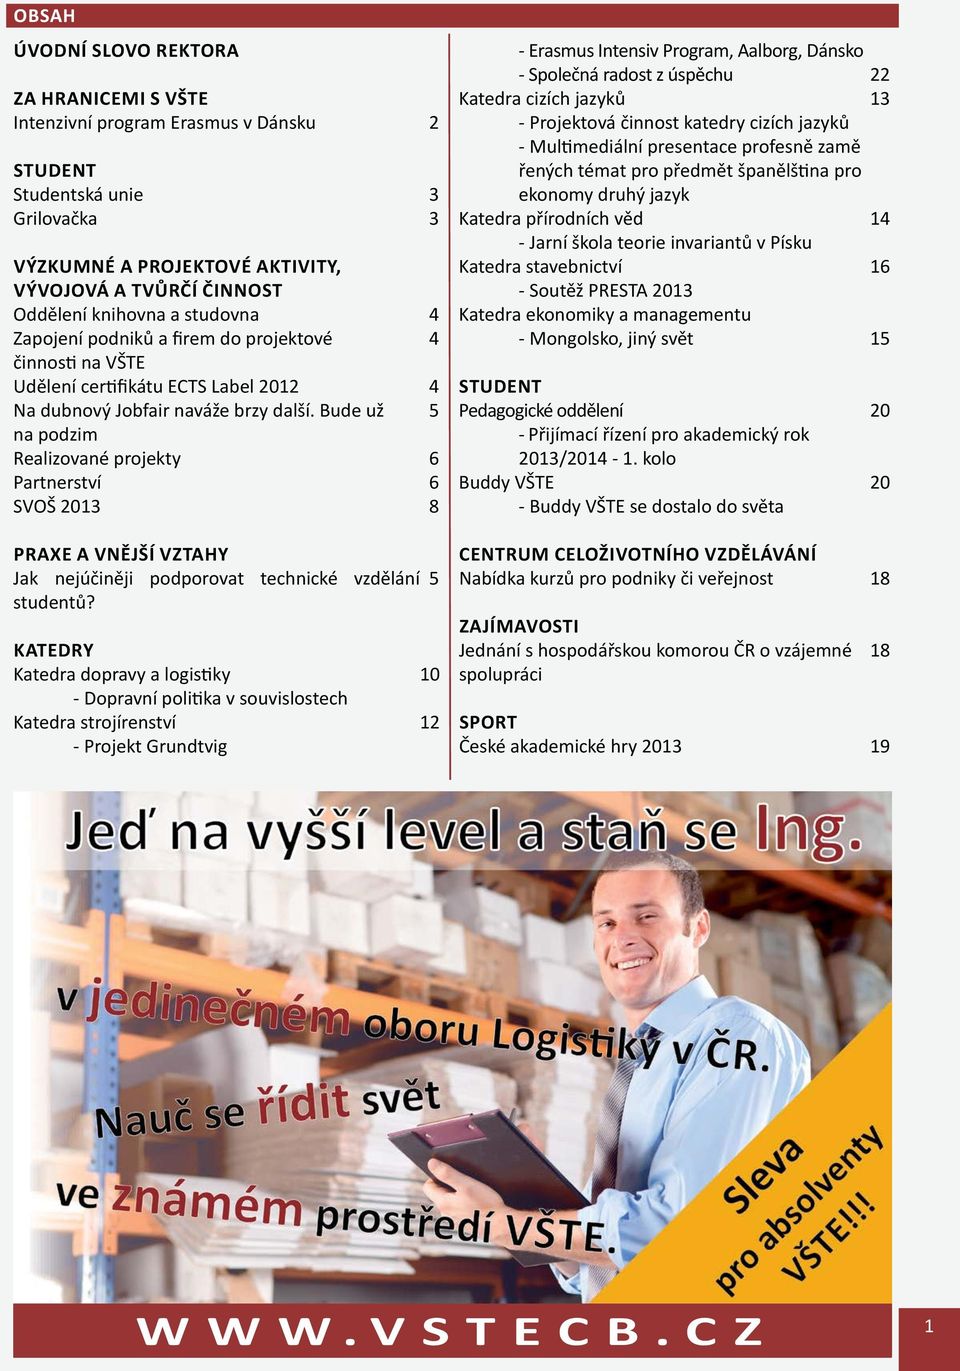 Bude už na podzim Realizované projekty Partnerství SVOŠ 2013 2 3 3 4 4 4 5 6 6 8 - Erasmus Intensiv Program, Aalborg, Dánsko - Společná radost z úspěchu Katedra cizích jazyků - Projektová činnost